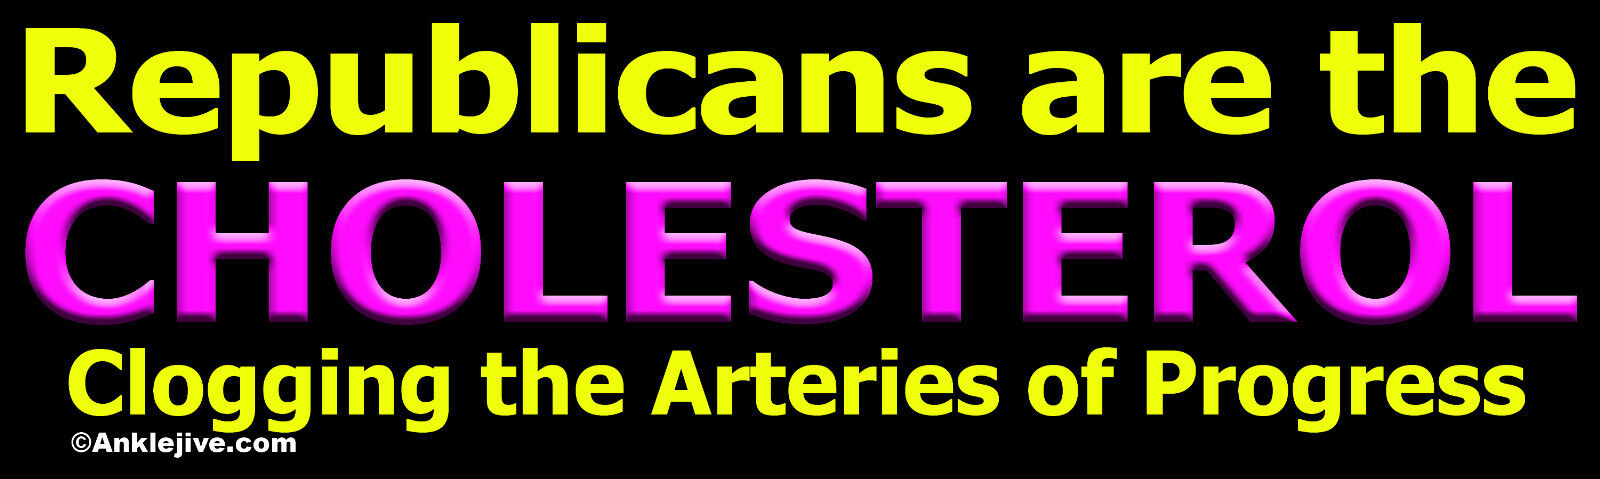 Republicans are the Cholesterol... - Liberal Progressive Window/Bumper Sticker